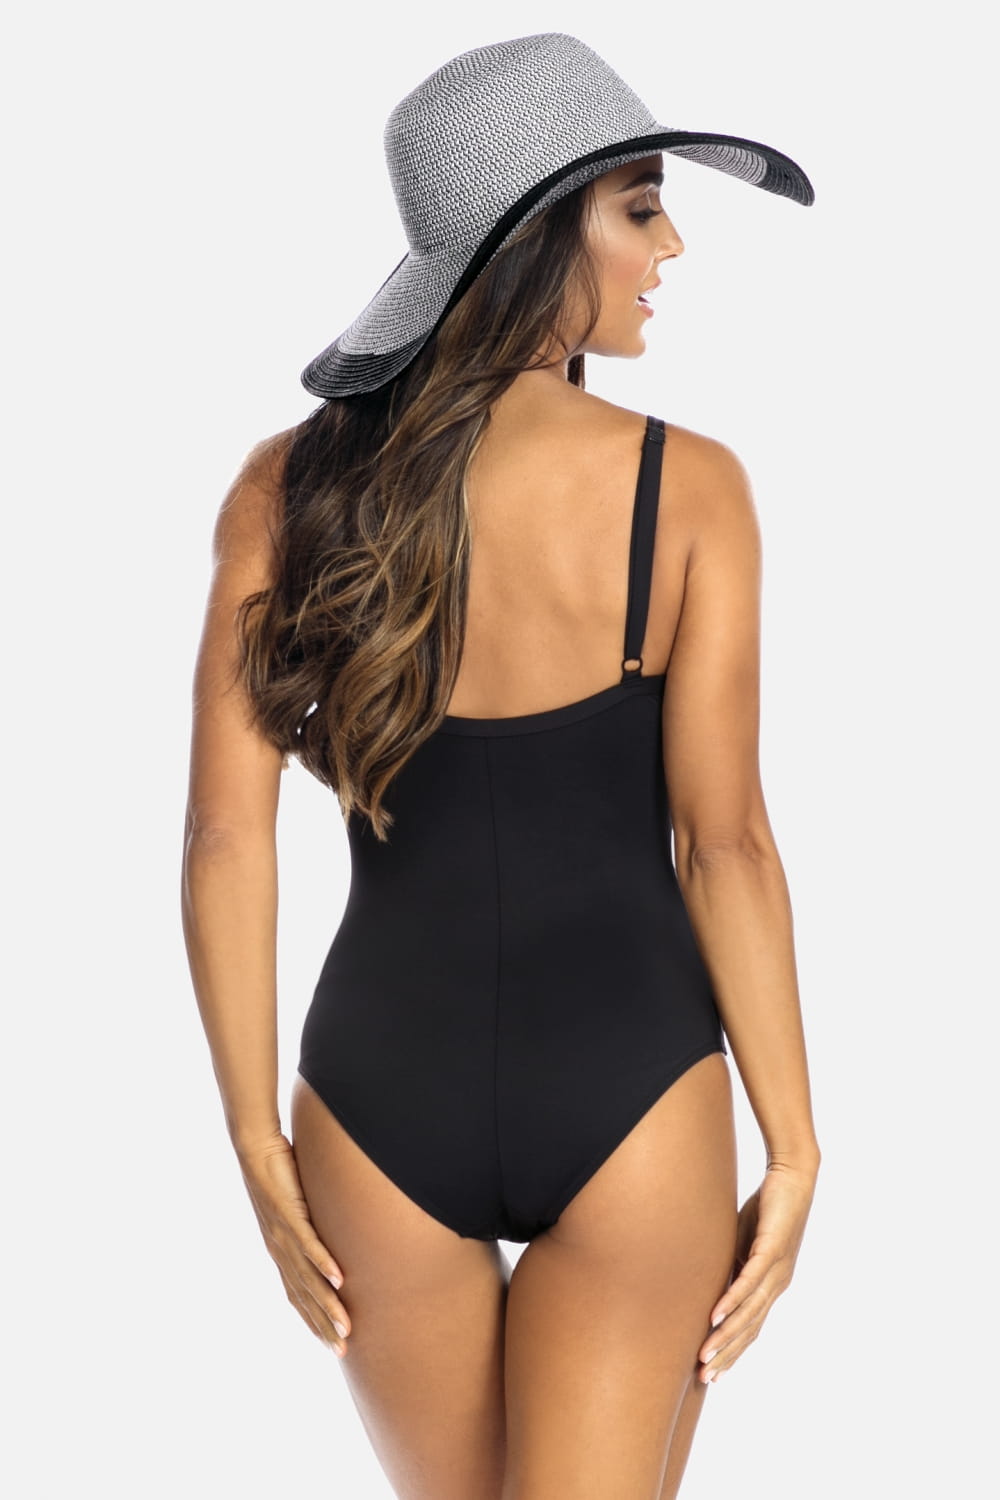 Luxury Swimwear F31 Slimming One Piece Swimsuit Black/Silver